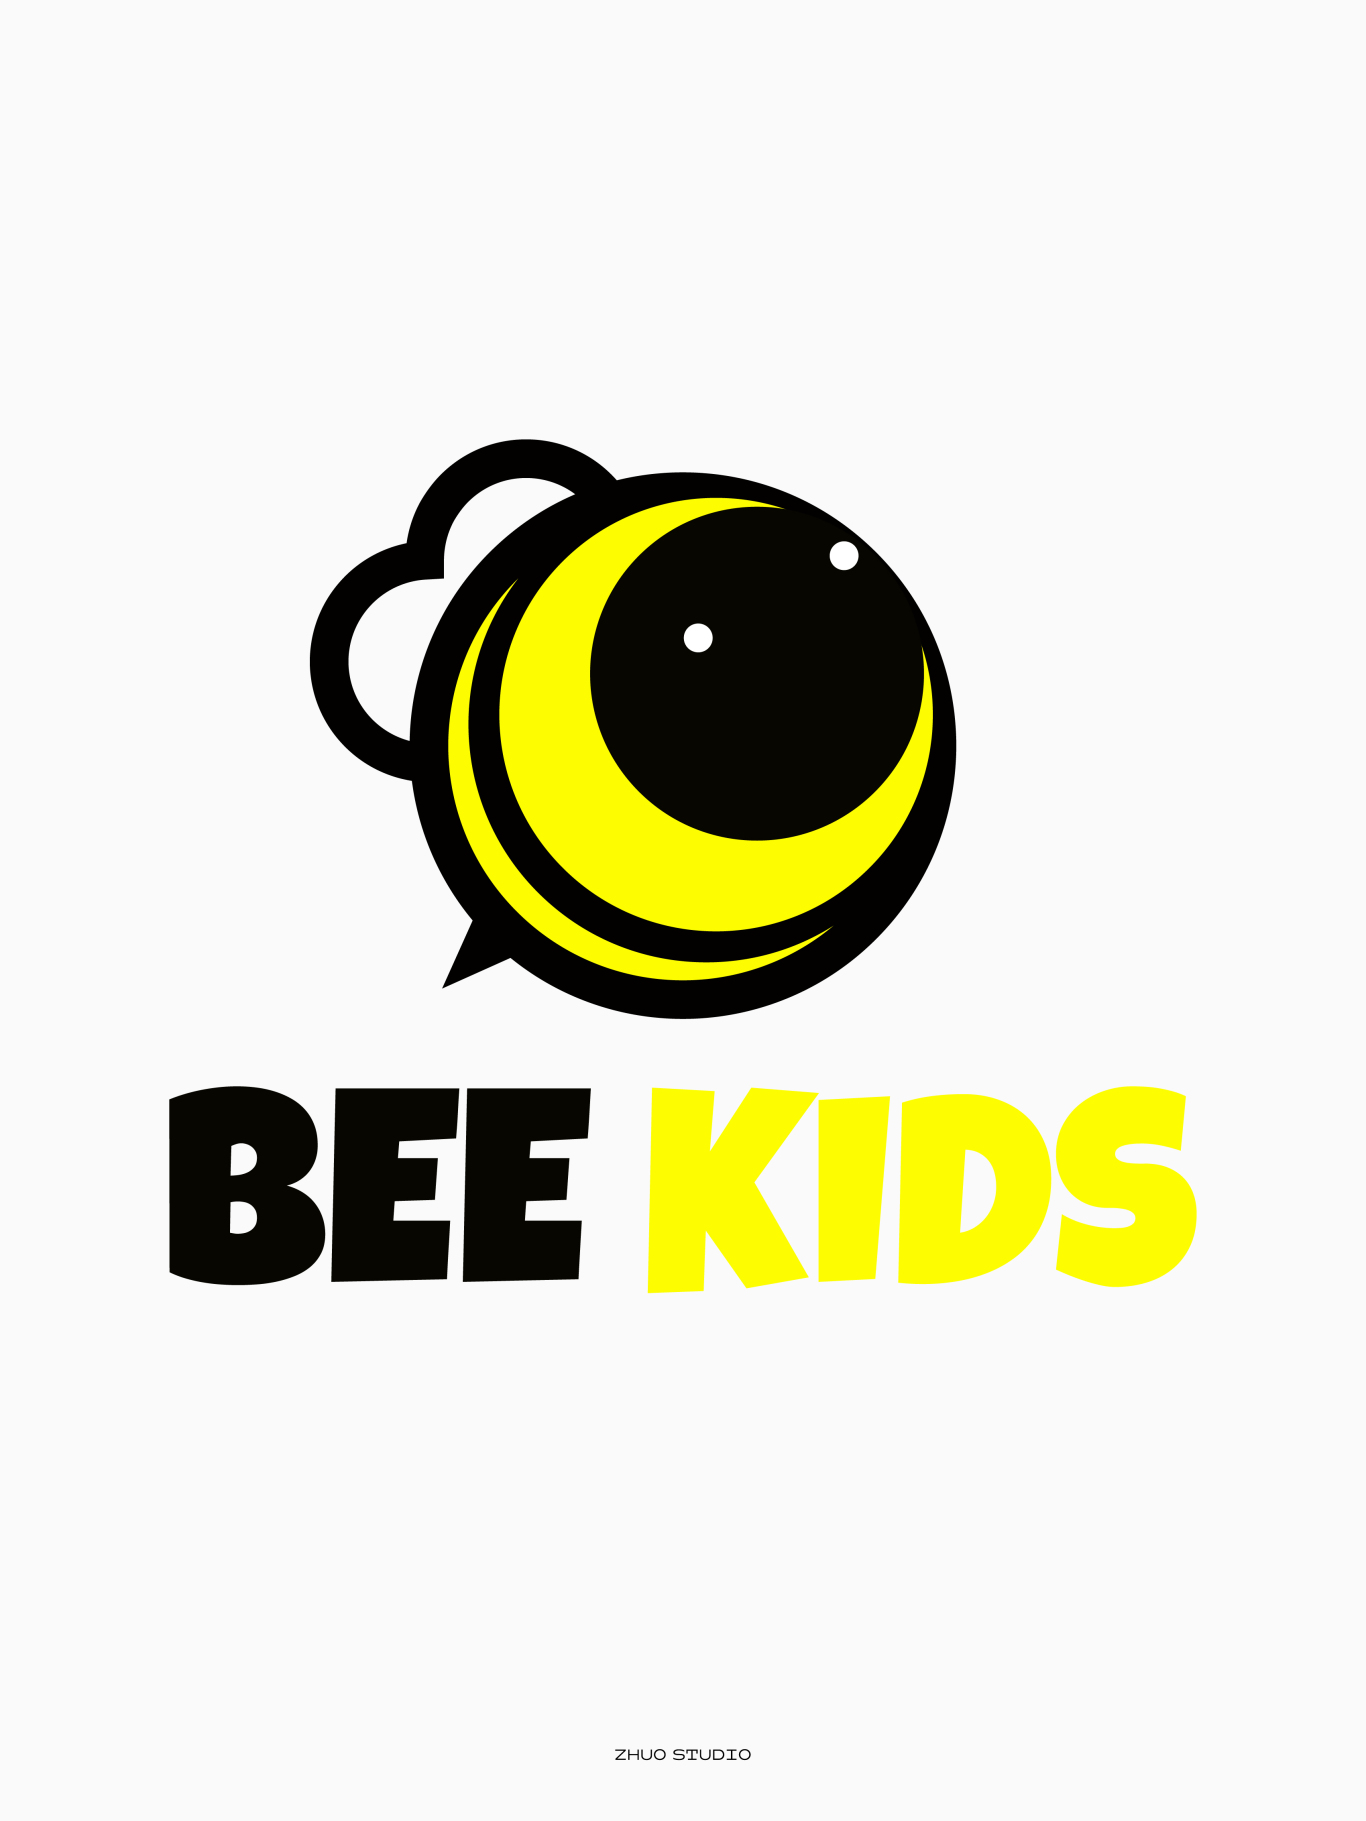 BEE KIDS 兒童音樂節品牌LOGO設計圖8